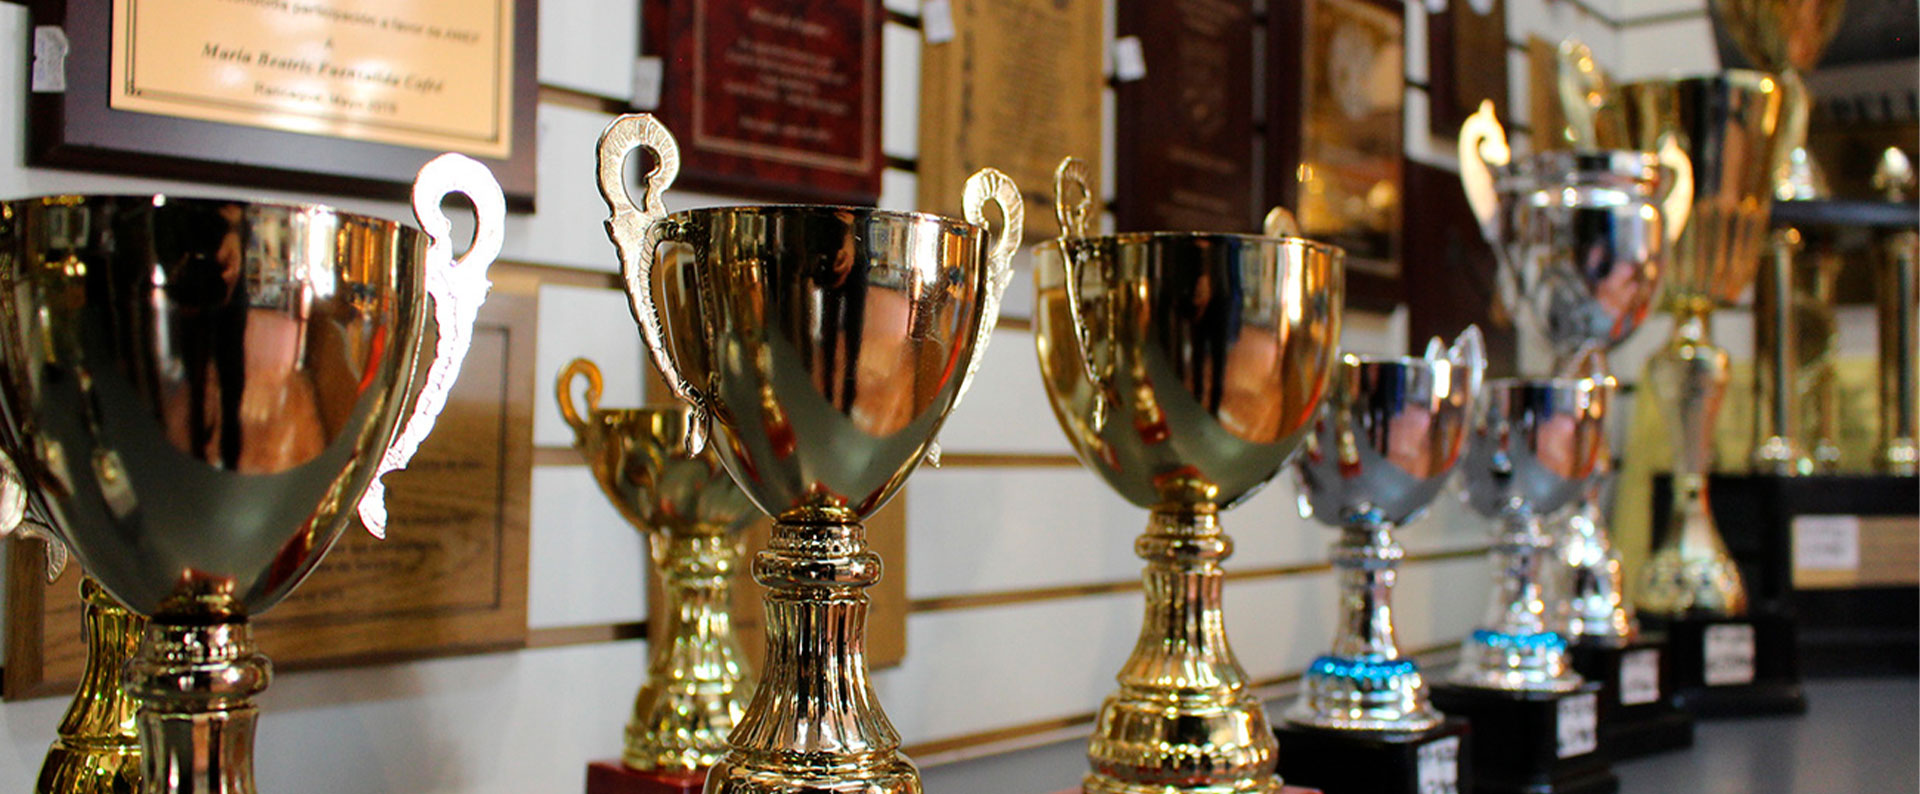 Copas, trofeos y regalos en Rancagua - Prixmarc Trofeos y Regalos